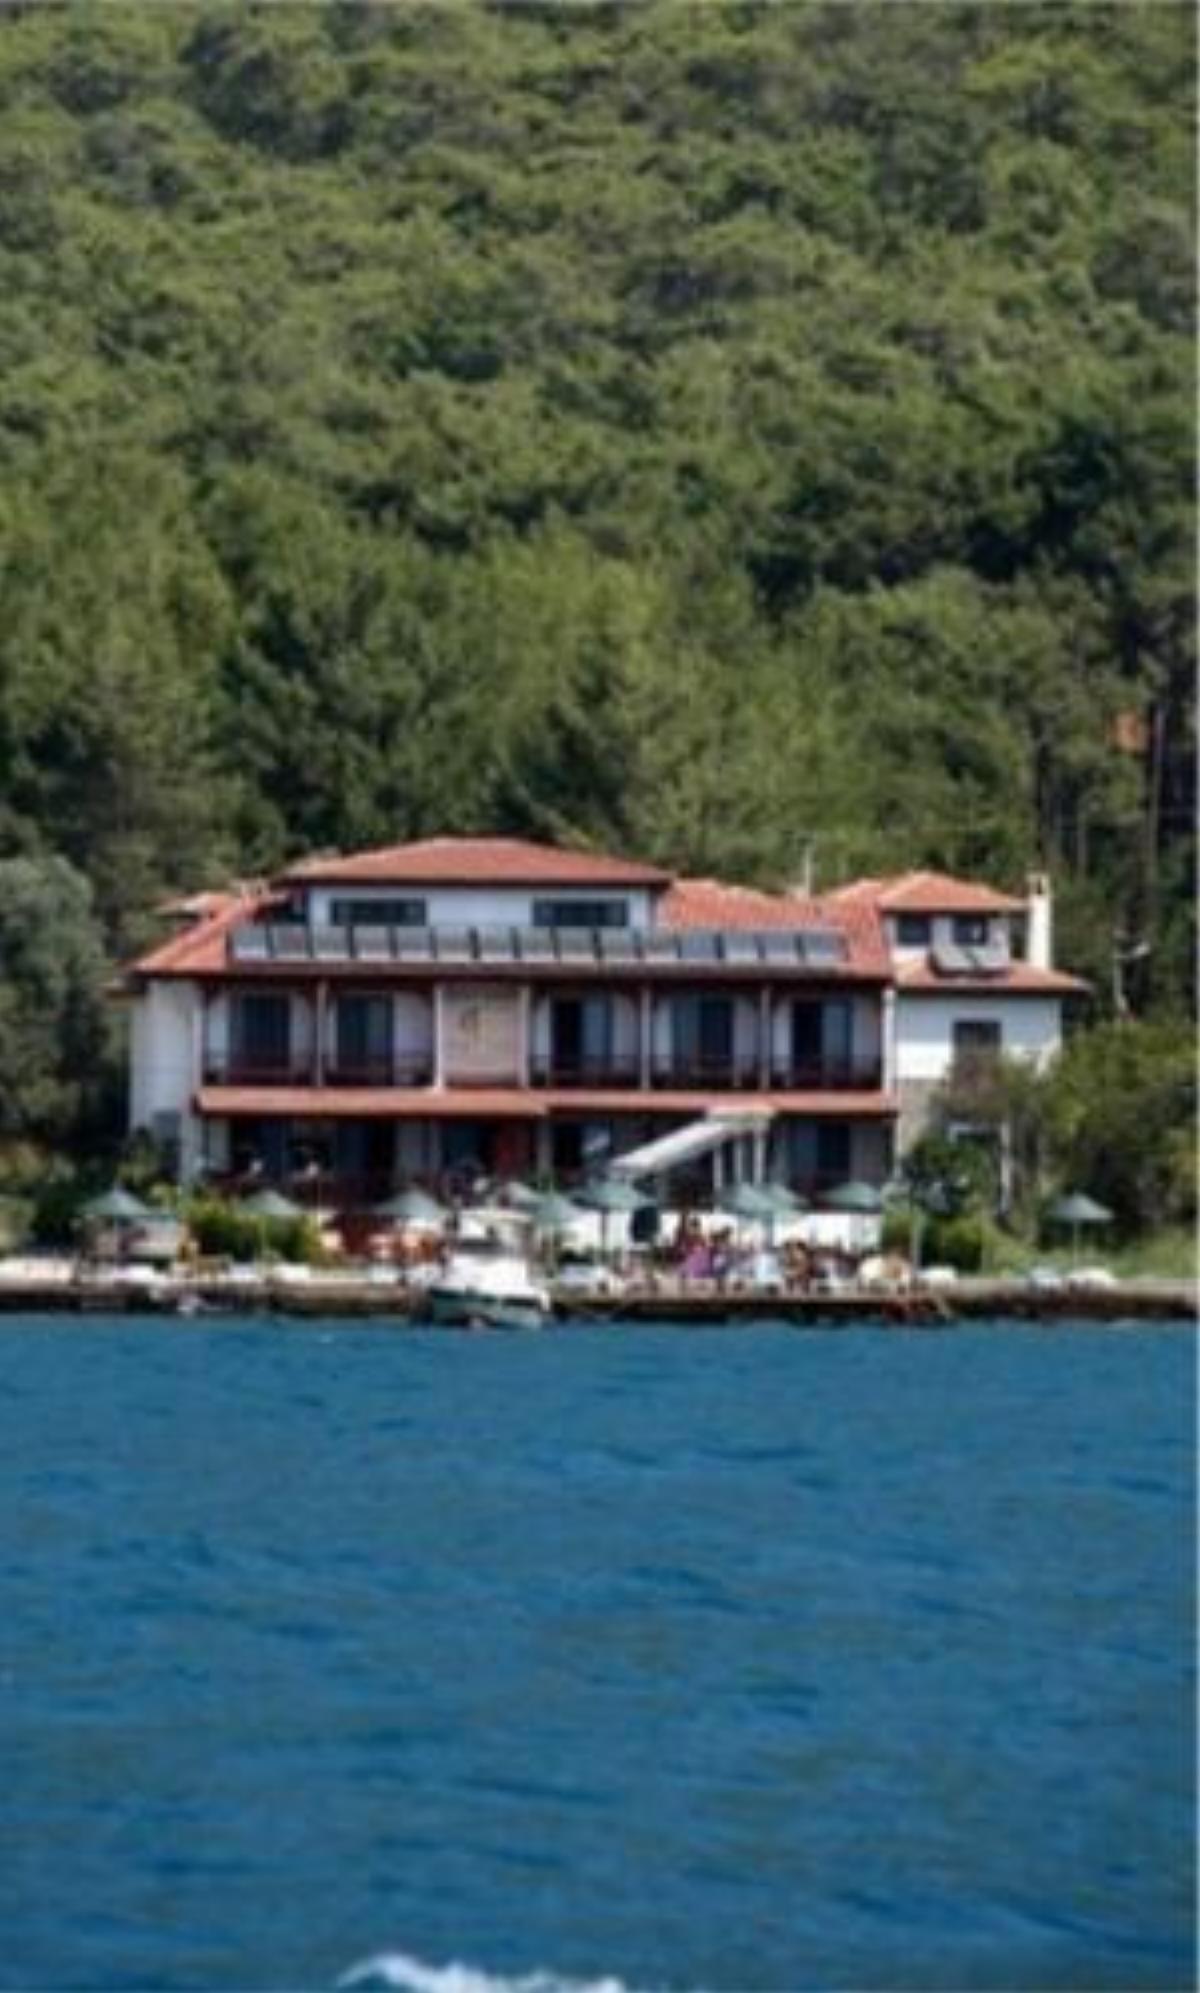 Filika Hotel Hotel Akyaka Turkey